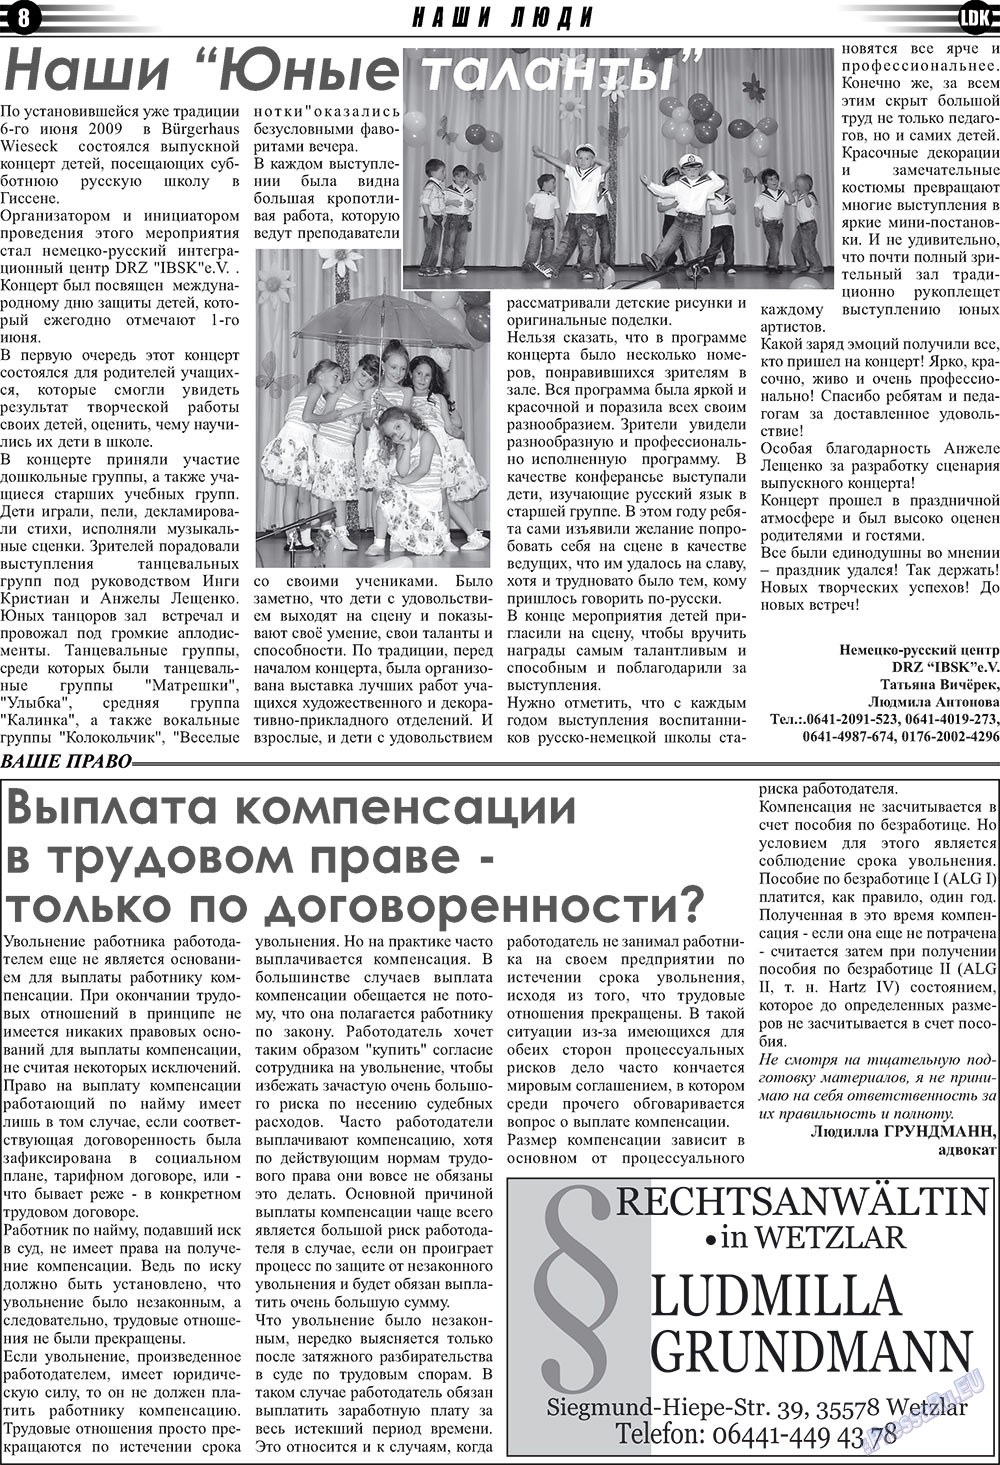 LDK по-русски (газета). 2009 год, номер 7, стр. 8